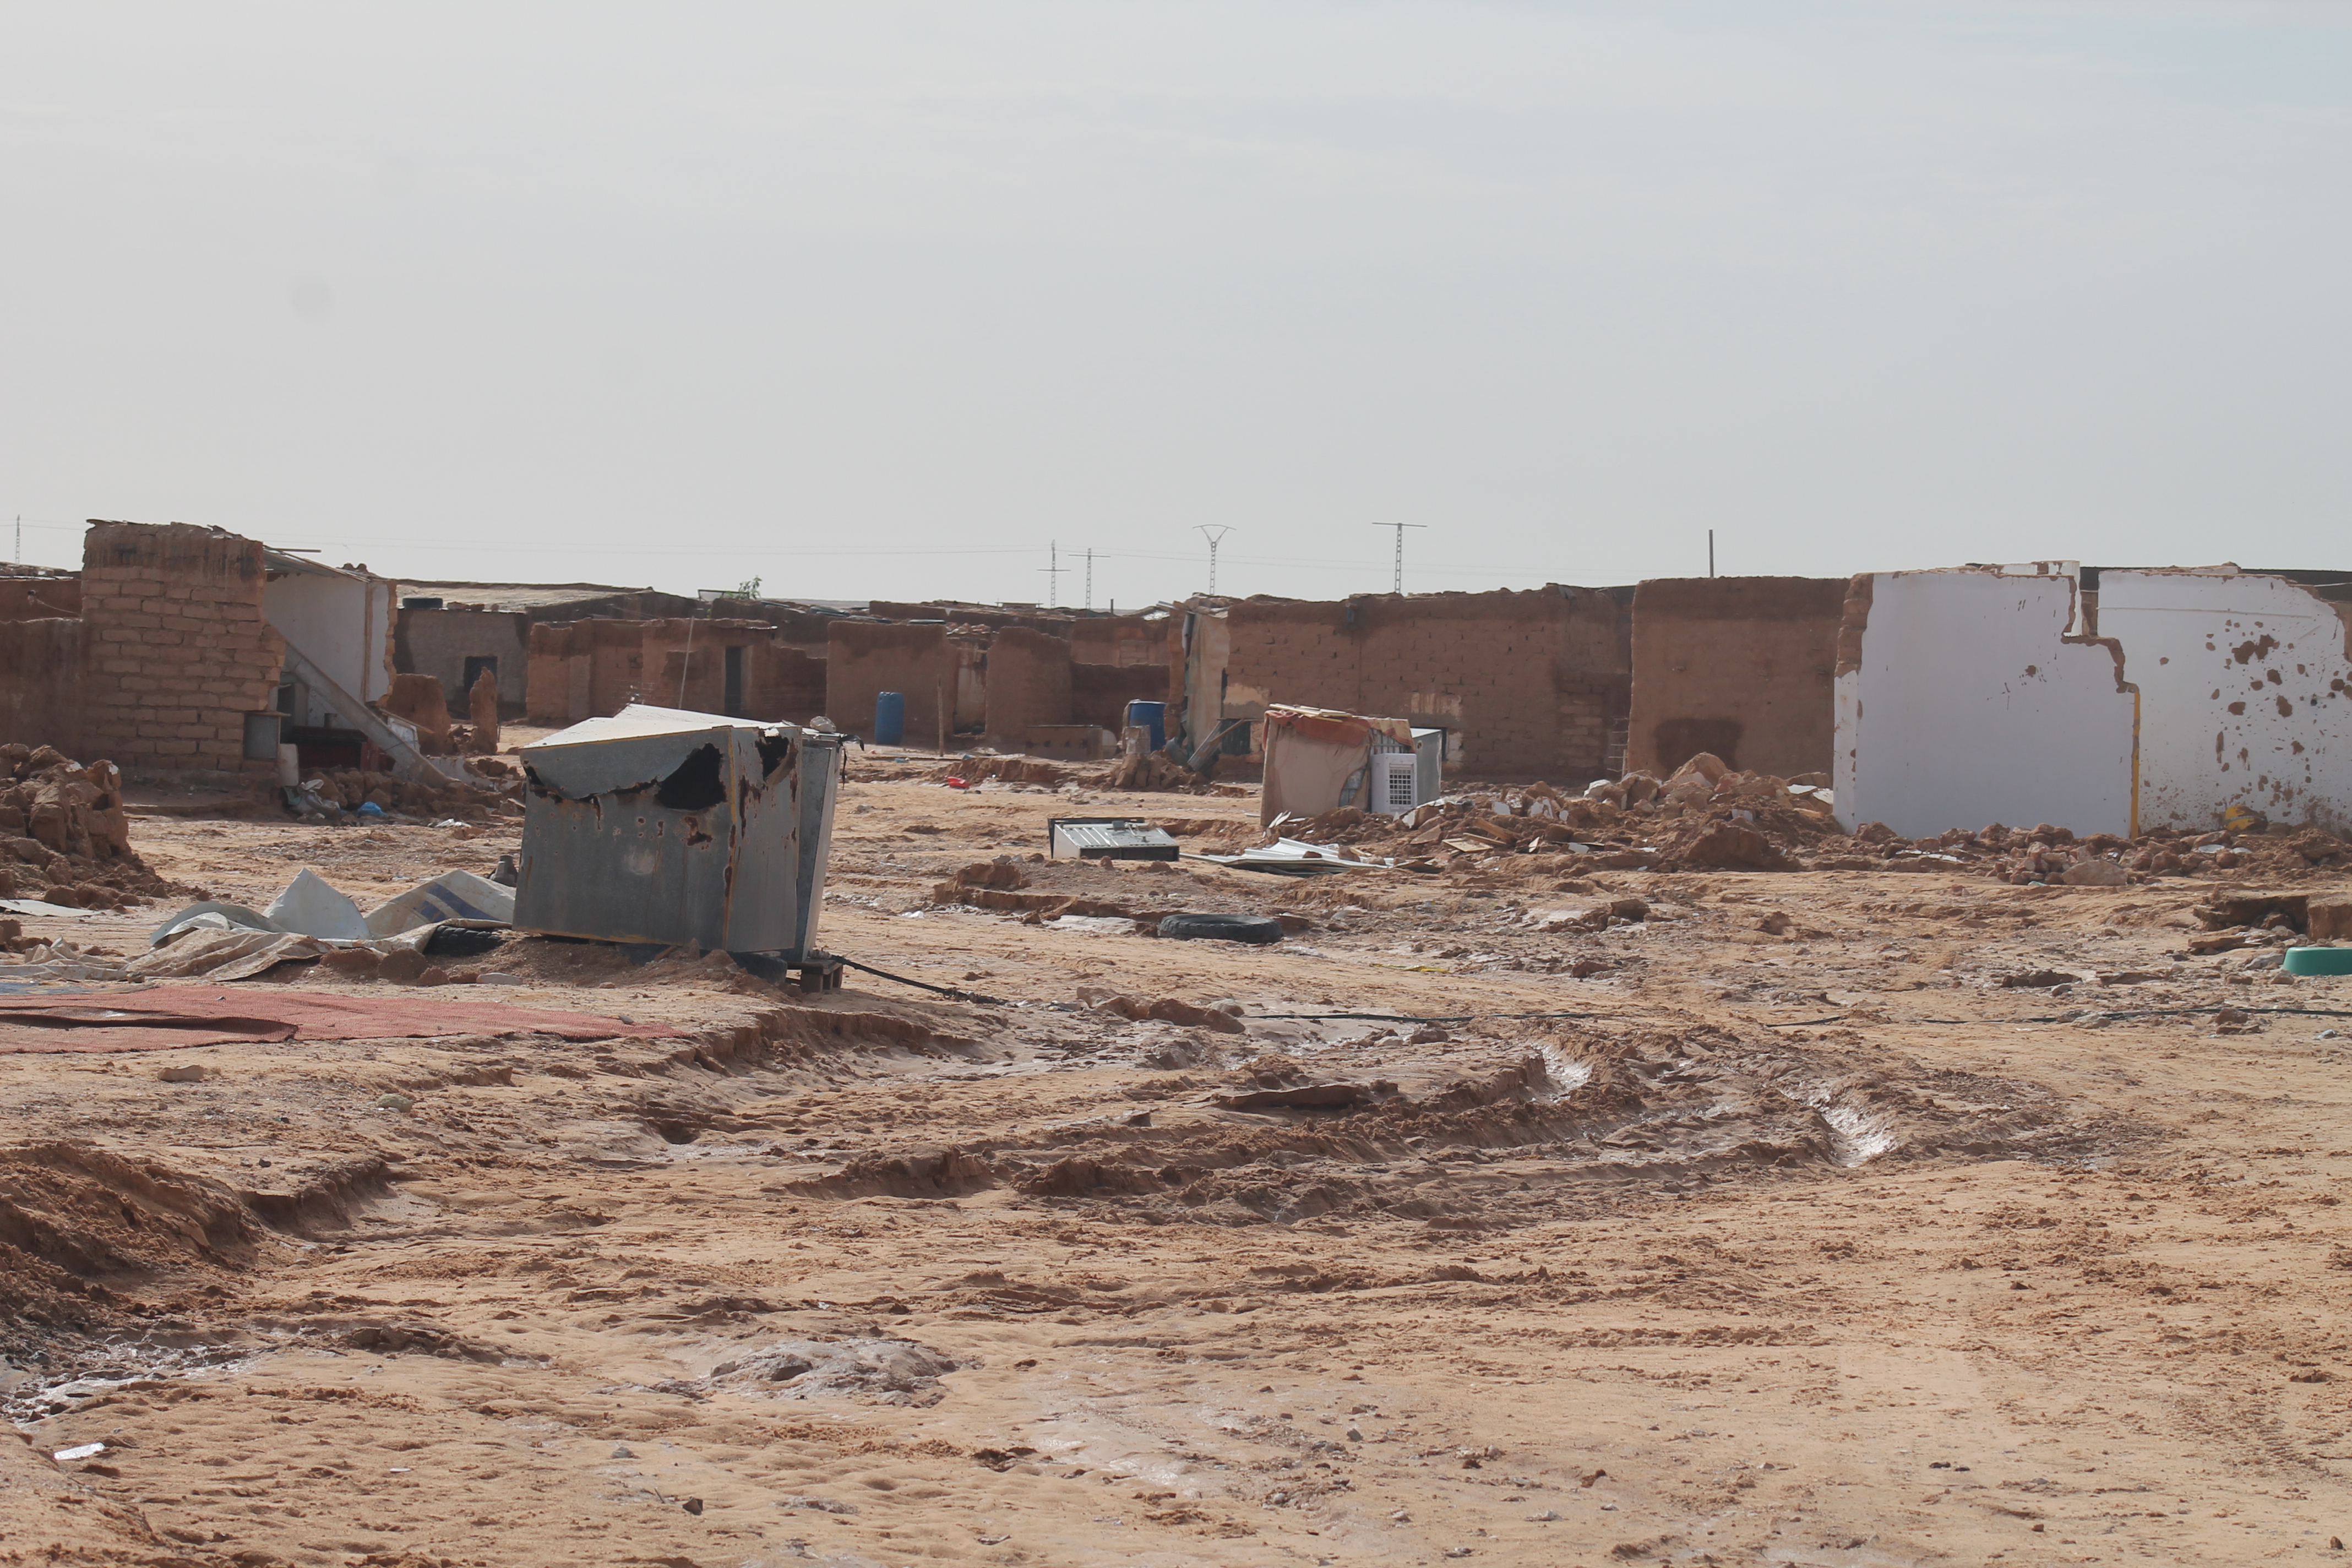 Le conseguenze dell'alluvione nei campi profughi saharawi